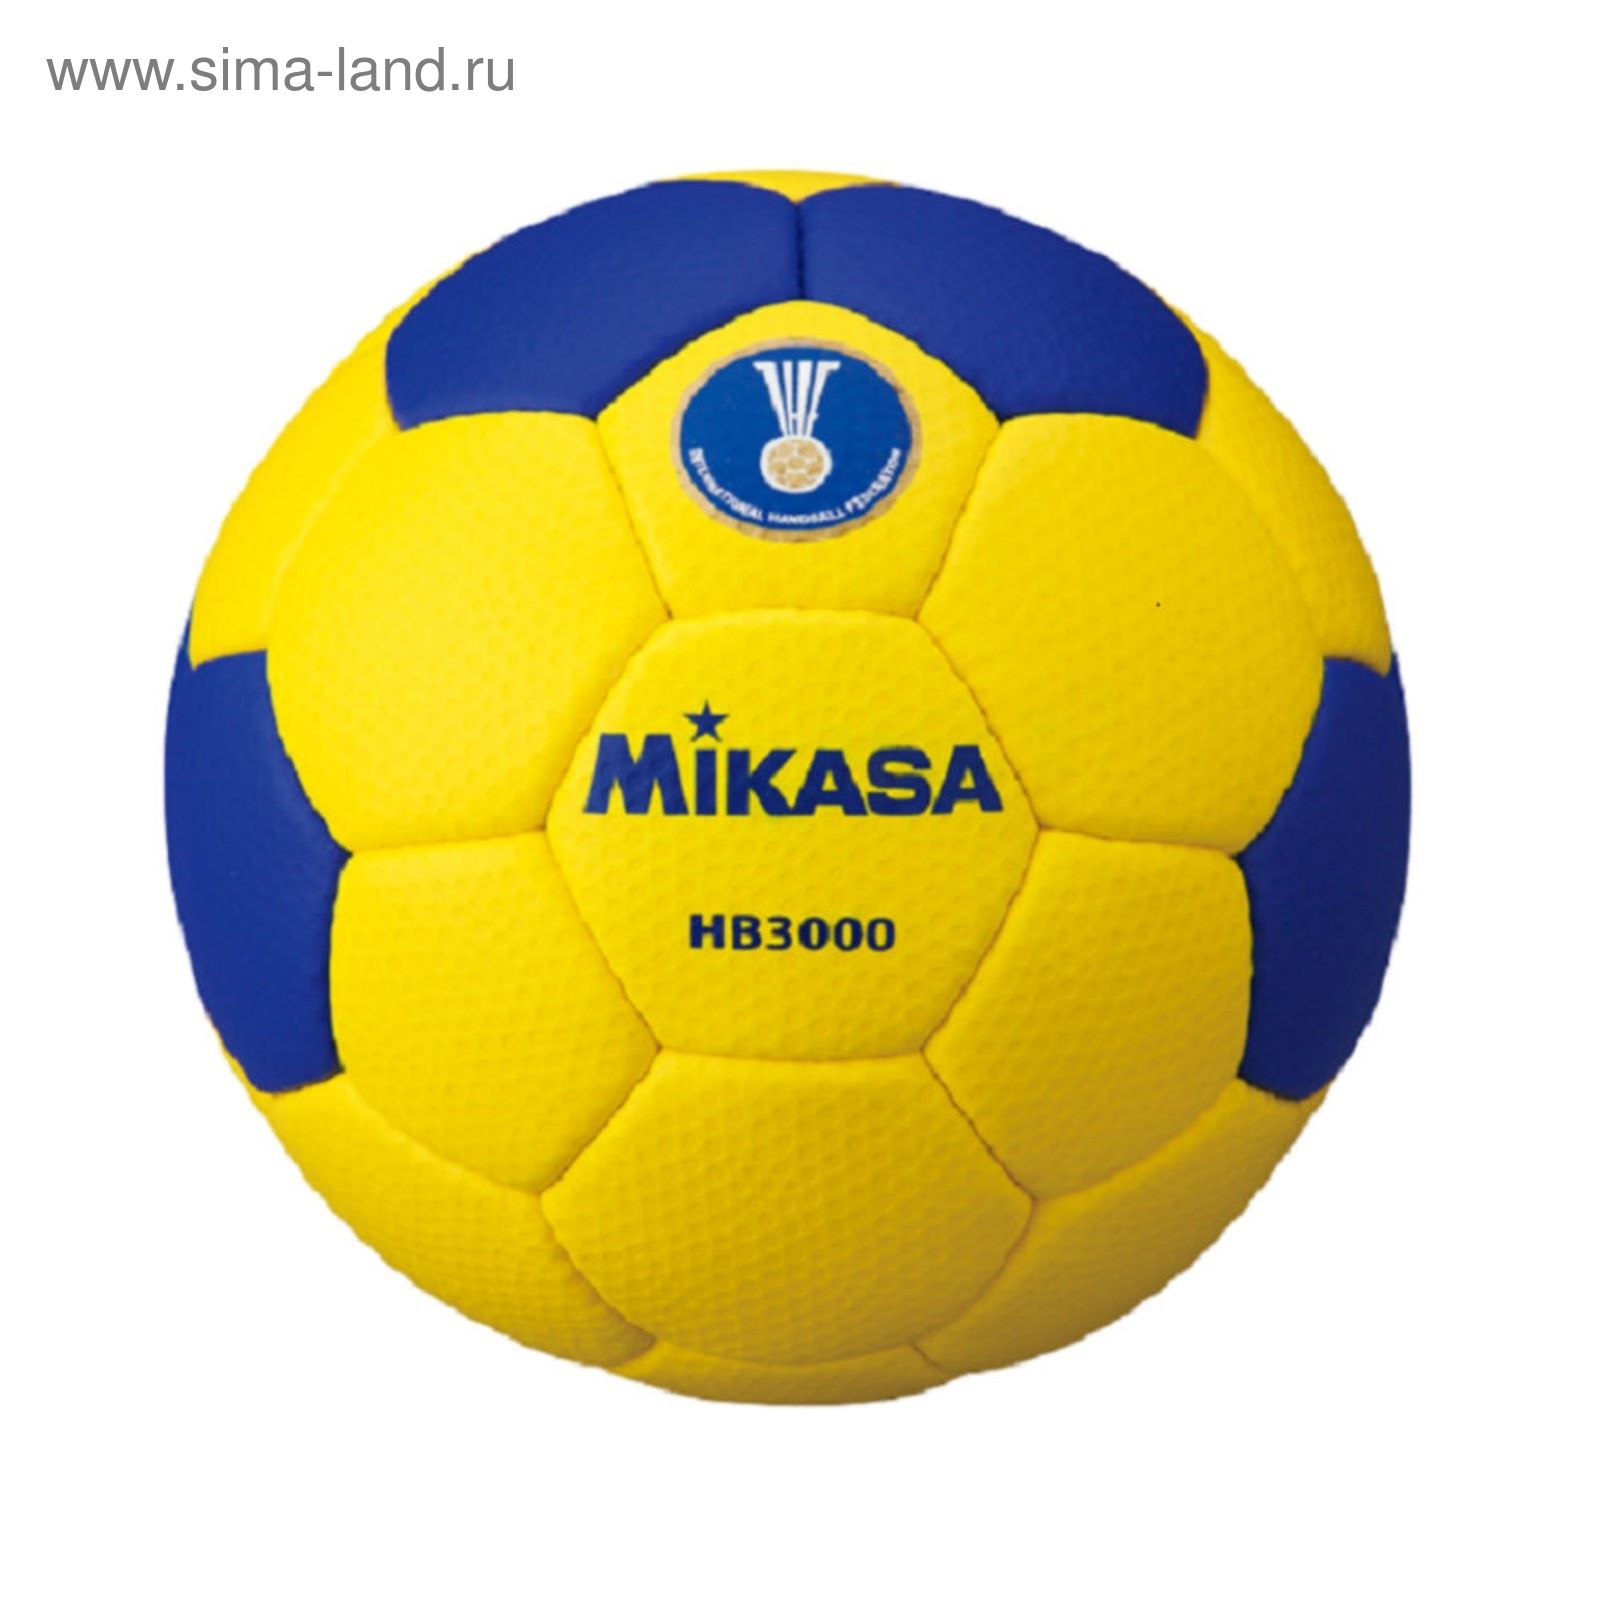 Мяч гандбольный Микаса